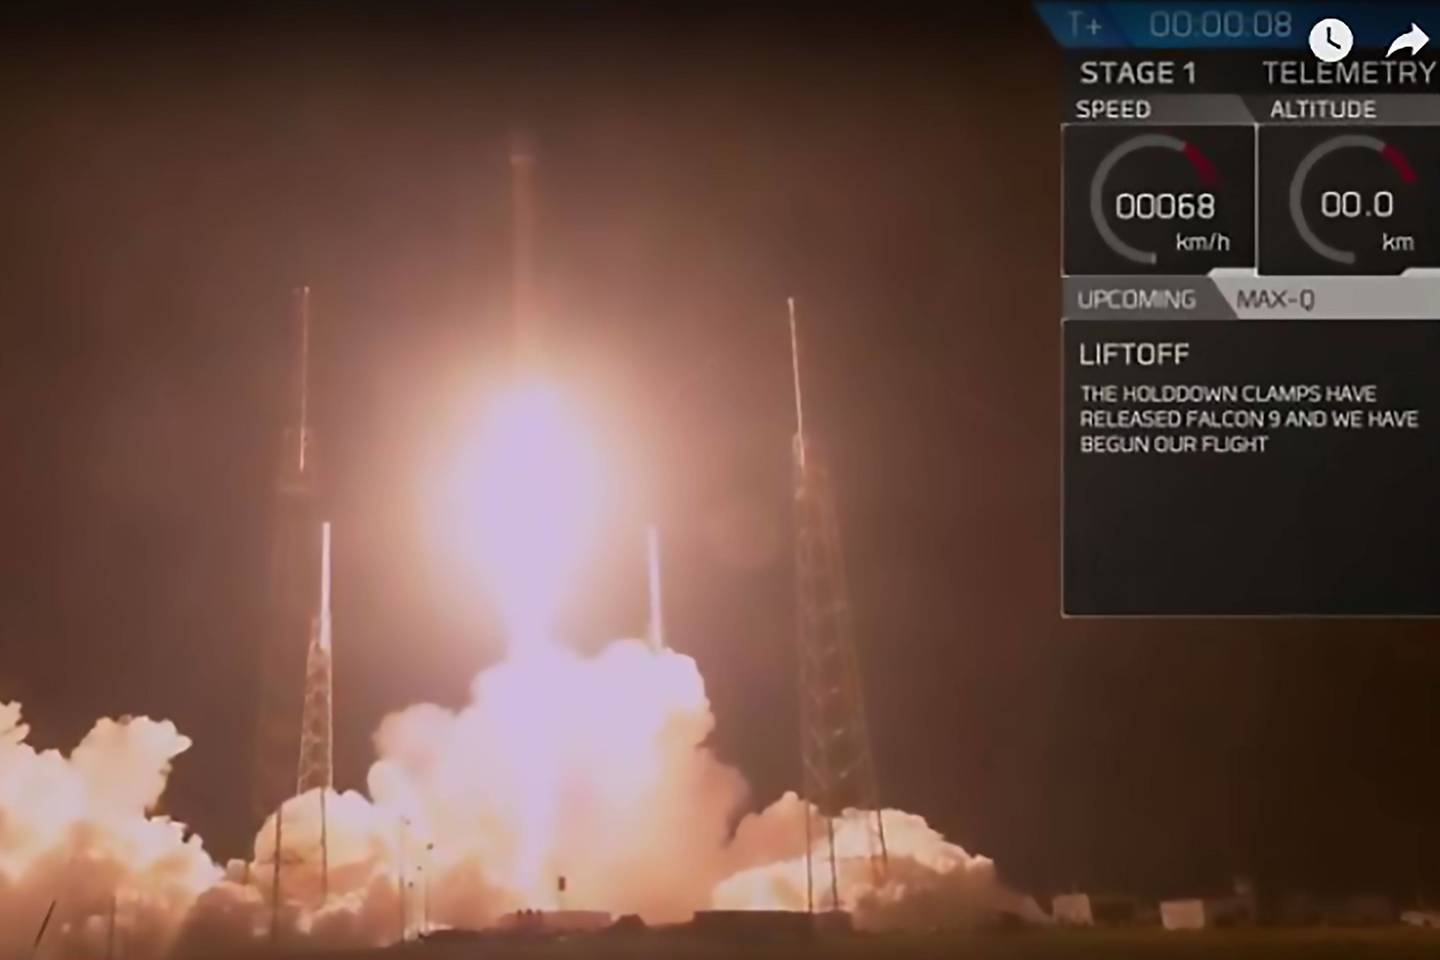  Bendrovė „SpaceX“ sekmadienį iškėlė į kosmosą mįslingą JAV vyriausybės kosminį aparatą „Zuma“, kurio misija neatskleidžiama ir netgi neskelbiama, kokia agentūra jį pasiuntė.<br> AFP / Scanpix nuotr.